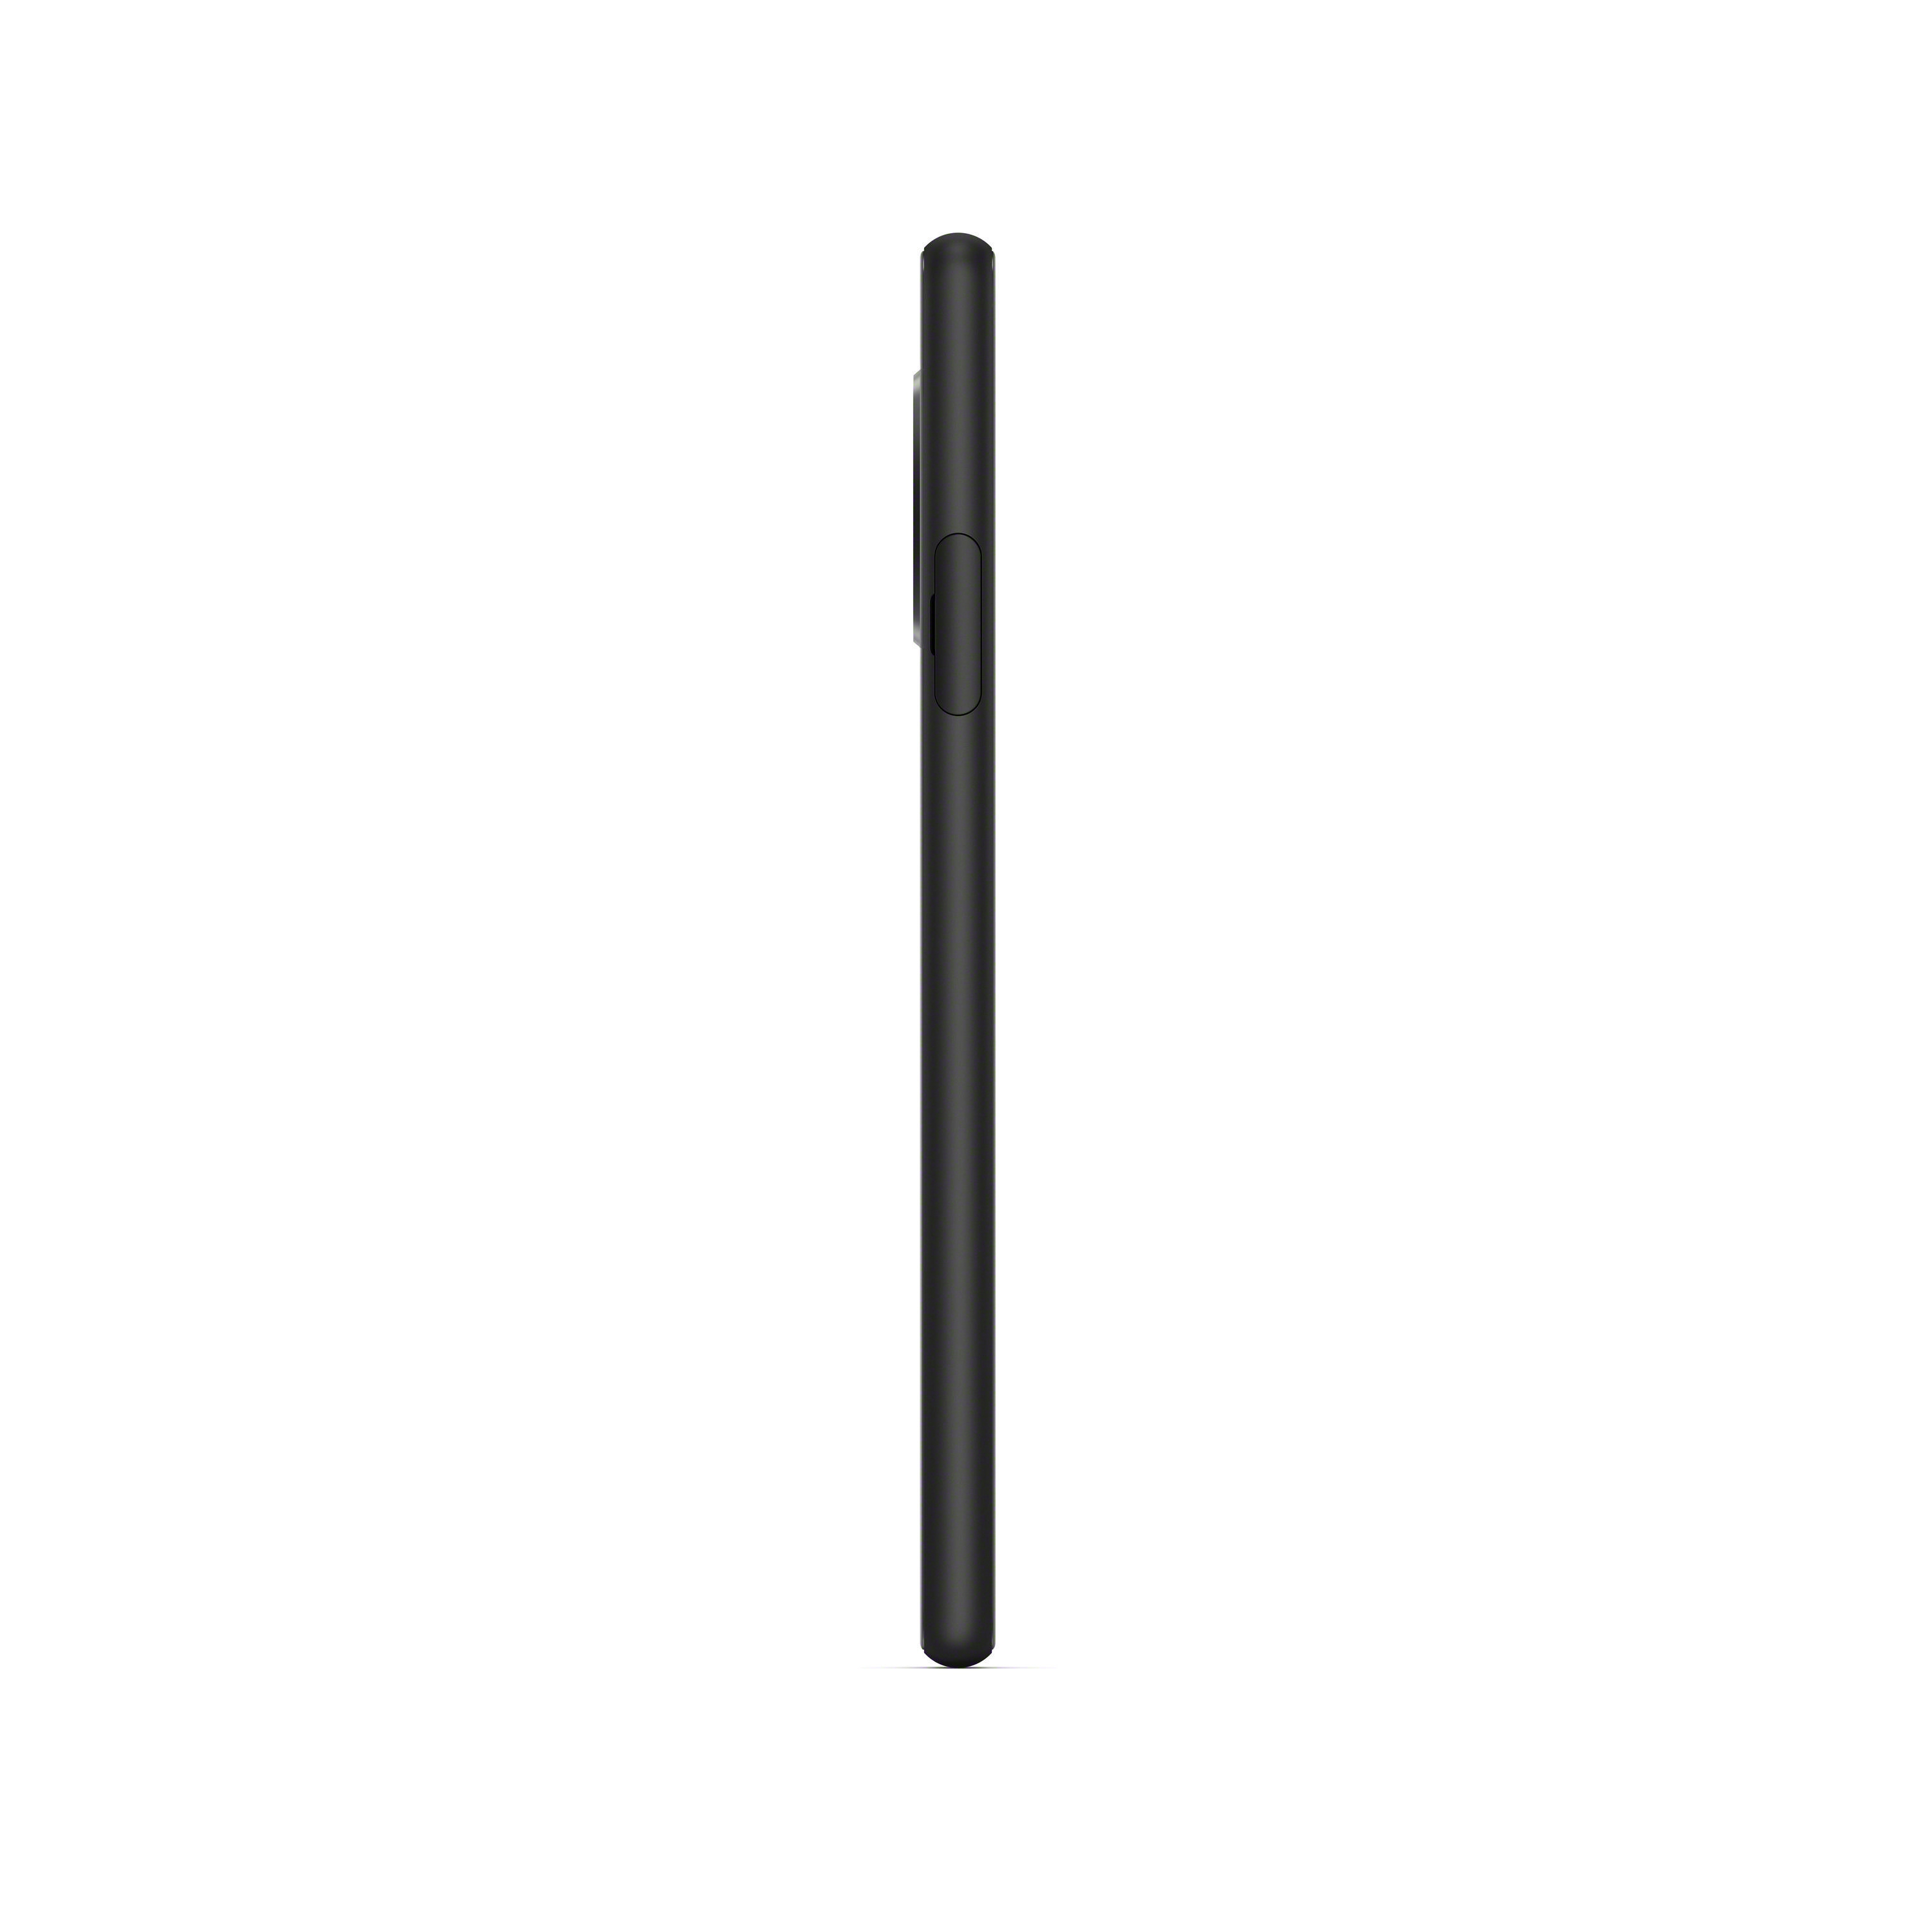 SONY Xperia 128 Schwarz GB 21:9 Display SIM II 10 Dual